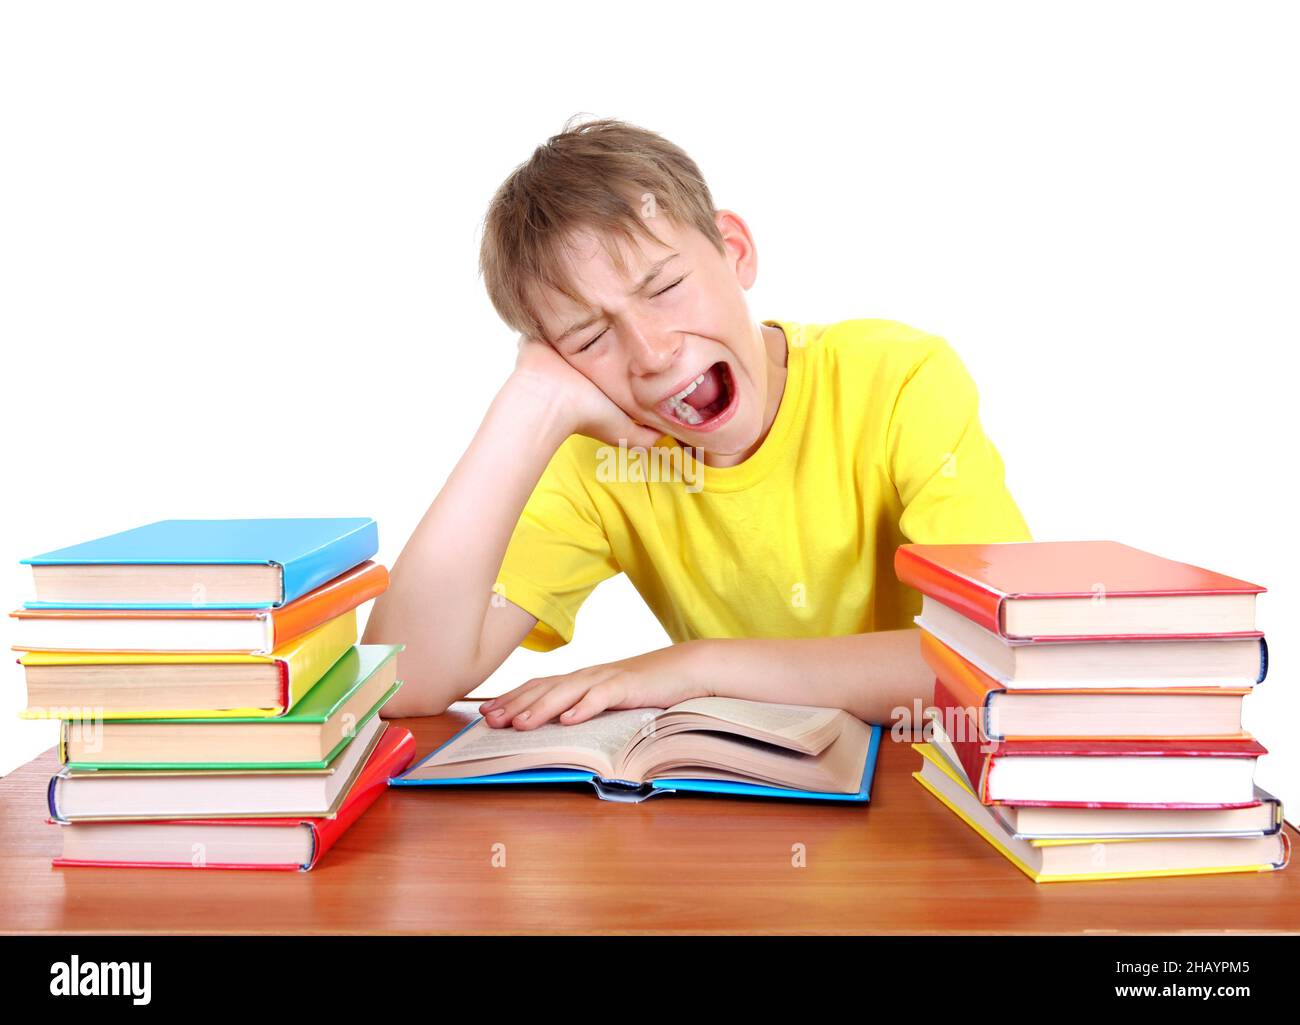 Un enfant fatigué s'ébarbant au bureau de l'école avec des livres sur fond blanc Banque D'Images